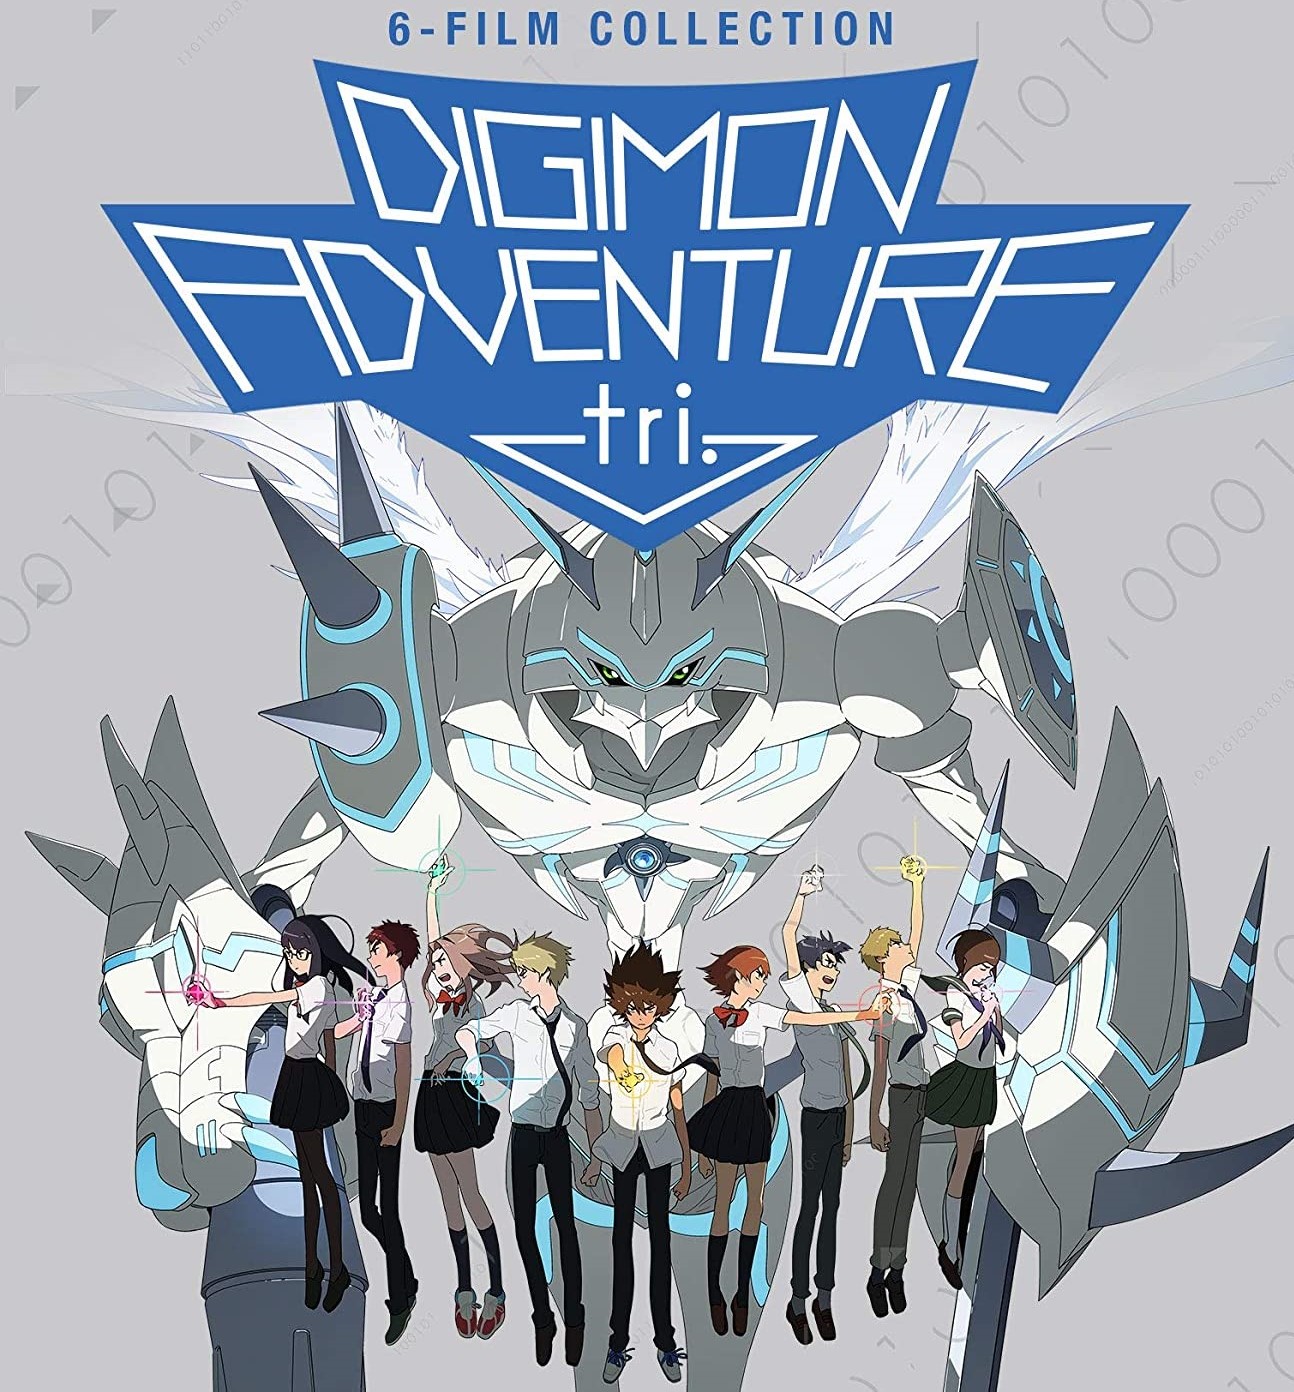 Tudo sobre Digimon!: Digimon Adventure Tri